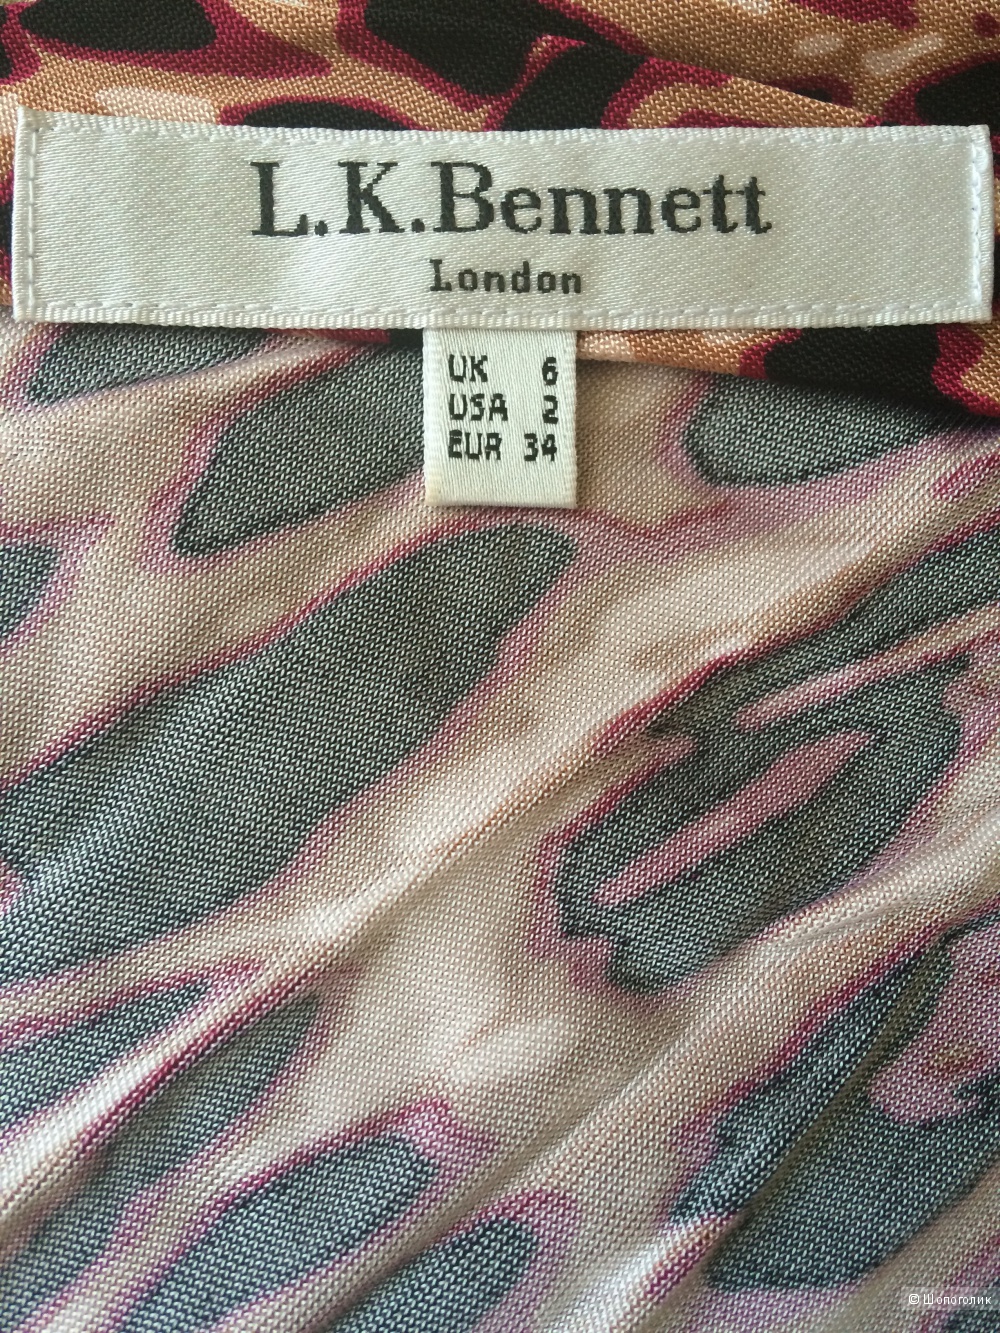 Платье LK Bennett, 6 английский, 40-42 российский